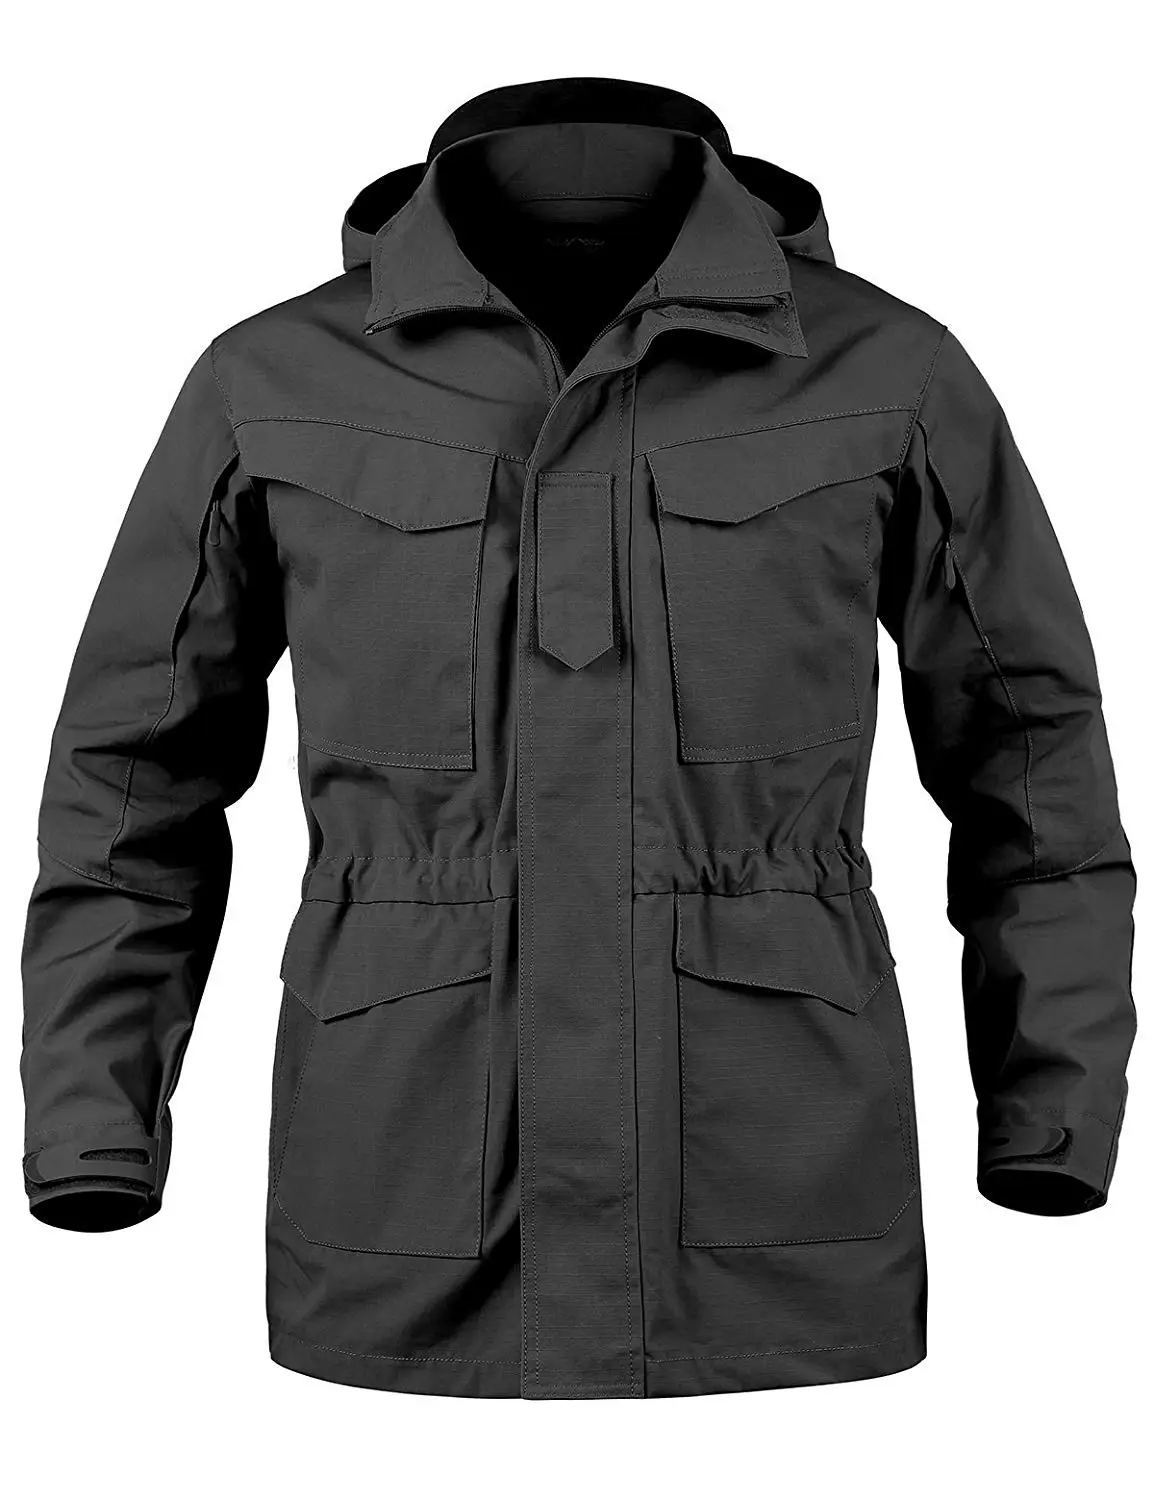 Cheap 5 11 Tactical Coat, find 5 11 Tactical Coat deals on line at ...